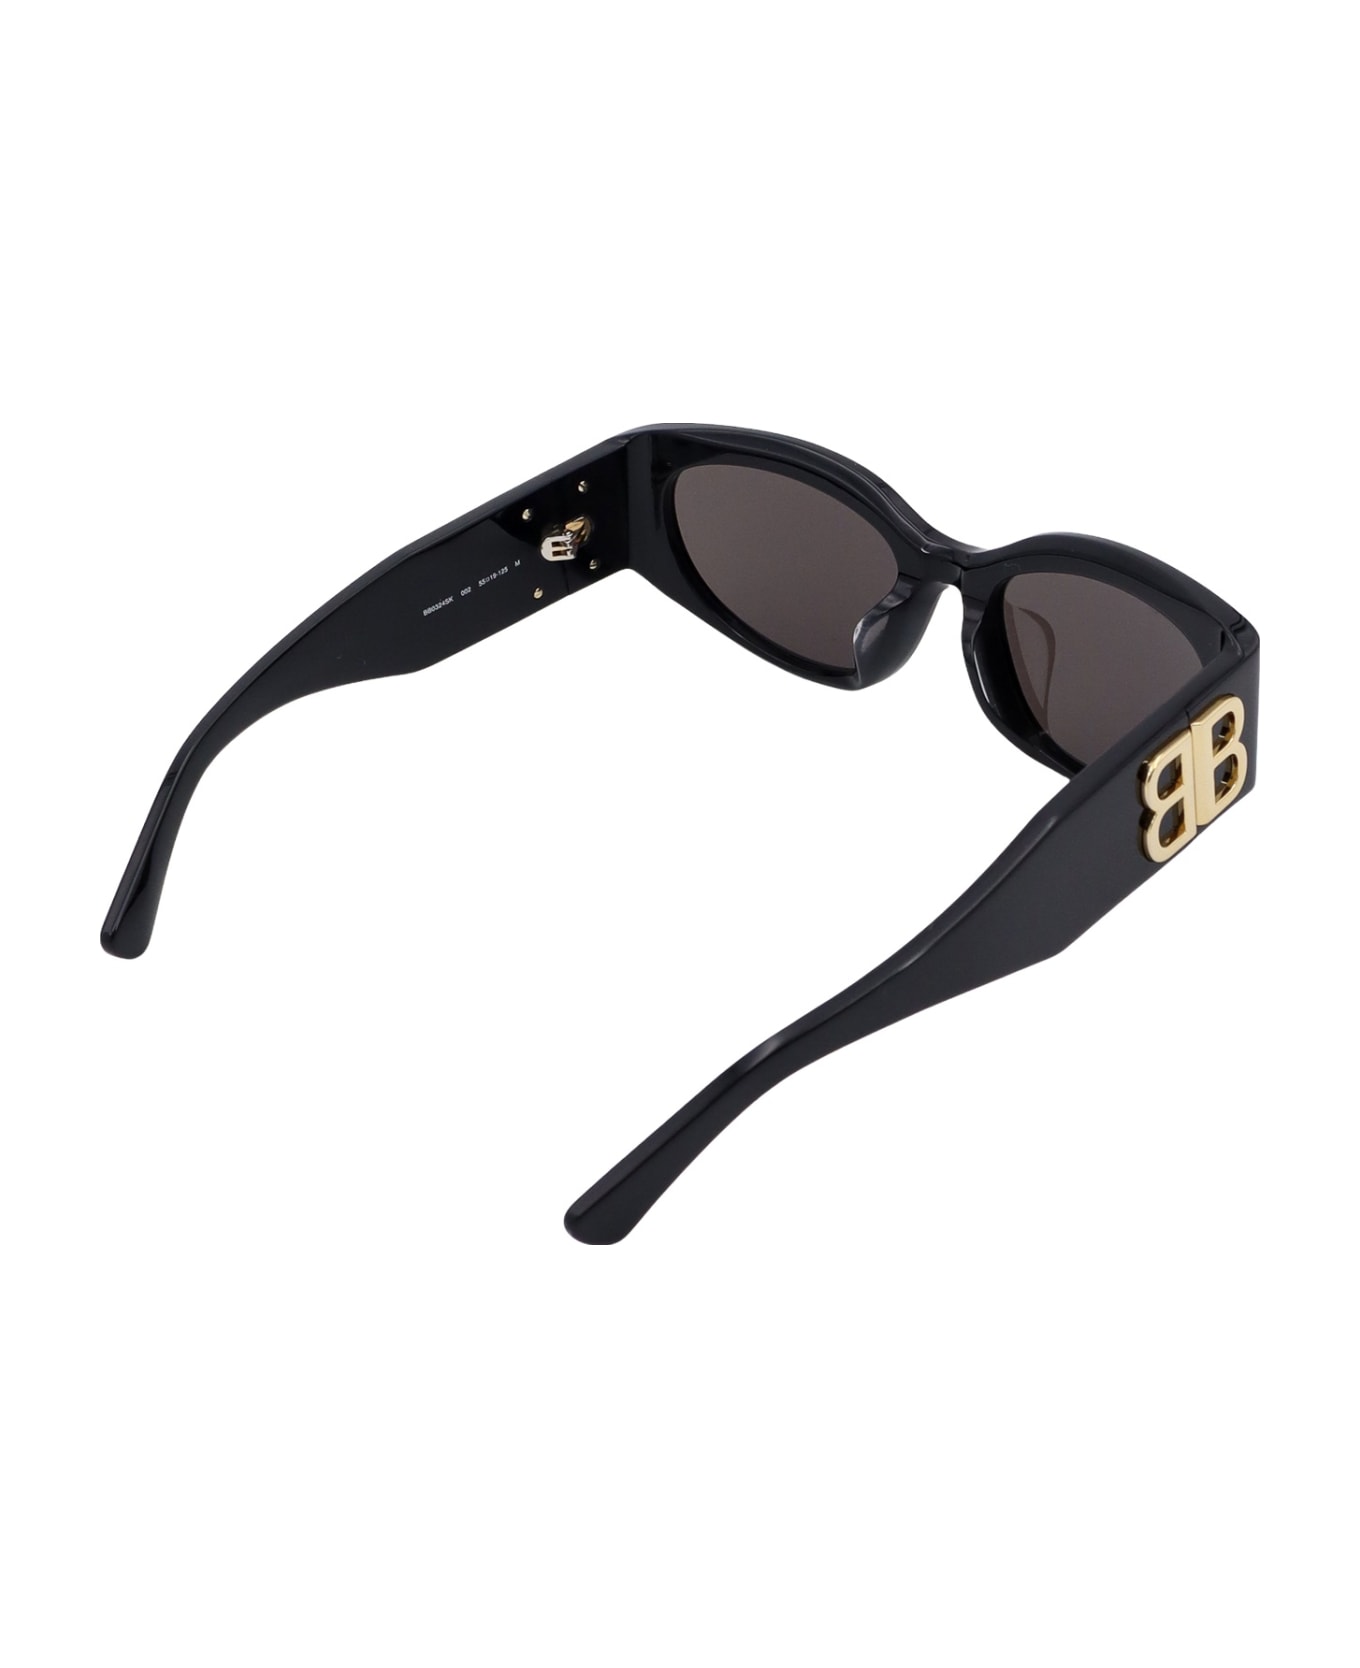 Balenciaga Acetate Sunglasses - Black